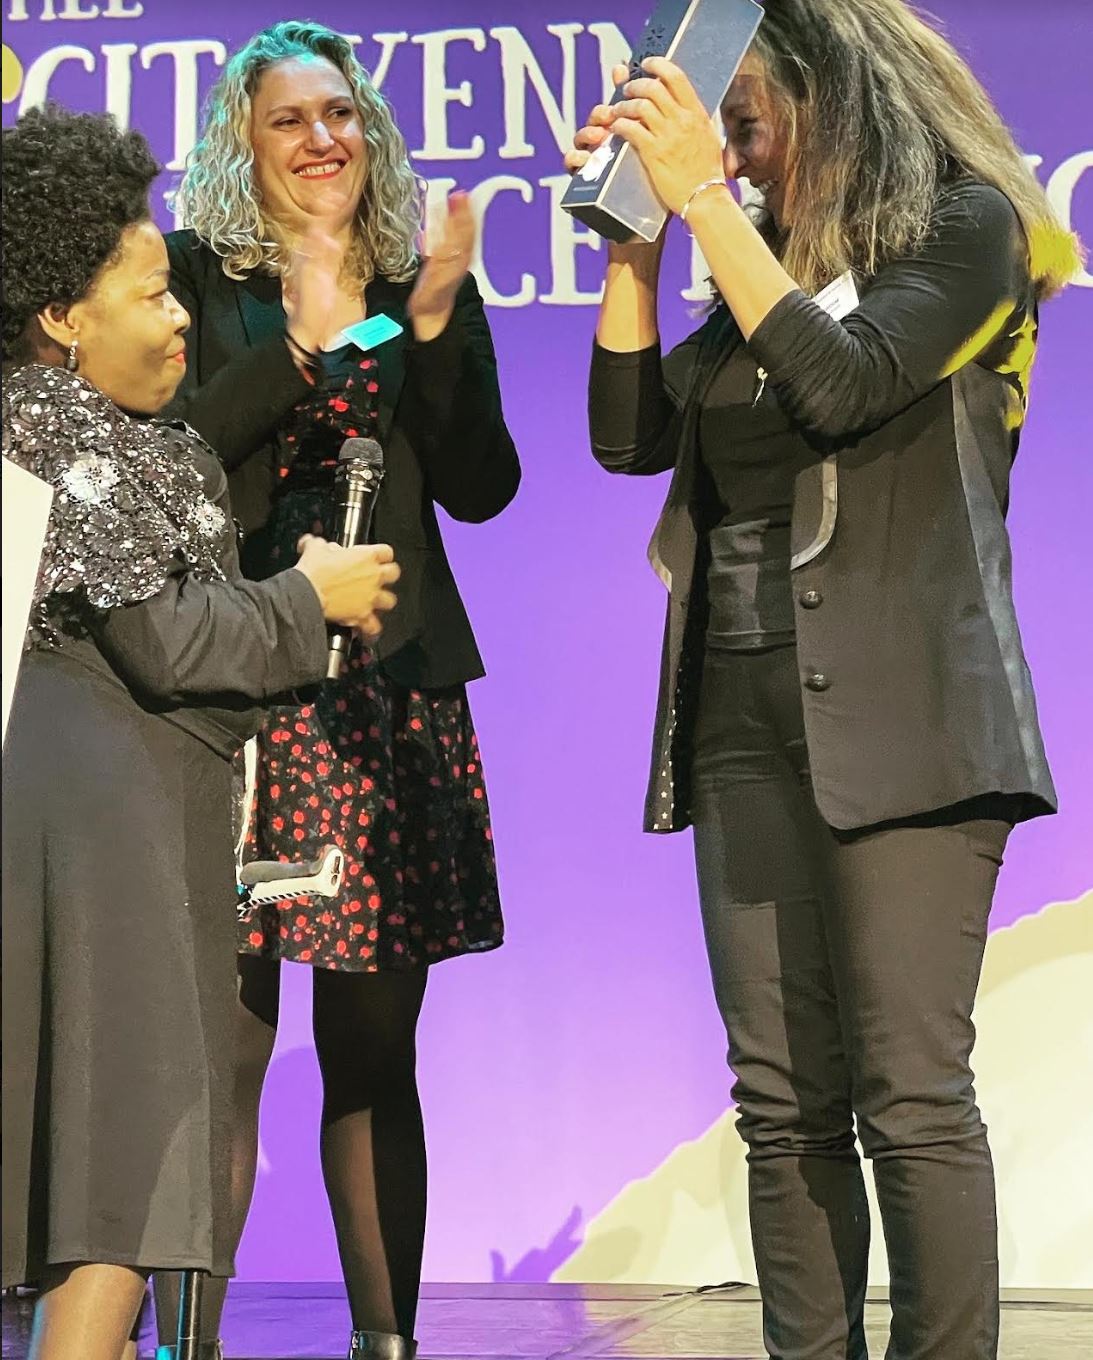 Deza, une femme de peau noire sourit largement alors qu'elle remet un trophée à une autre personne, capturant un moment de joie et de célébration. 